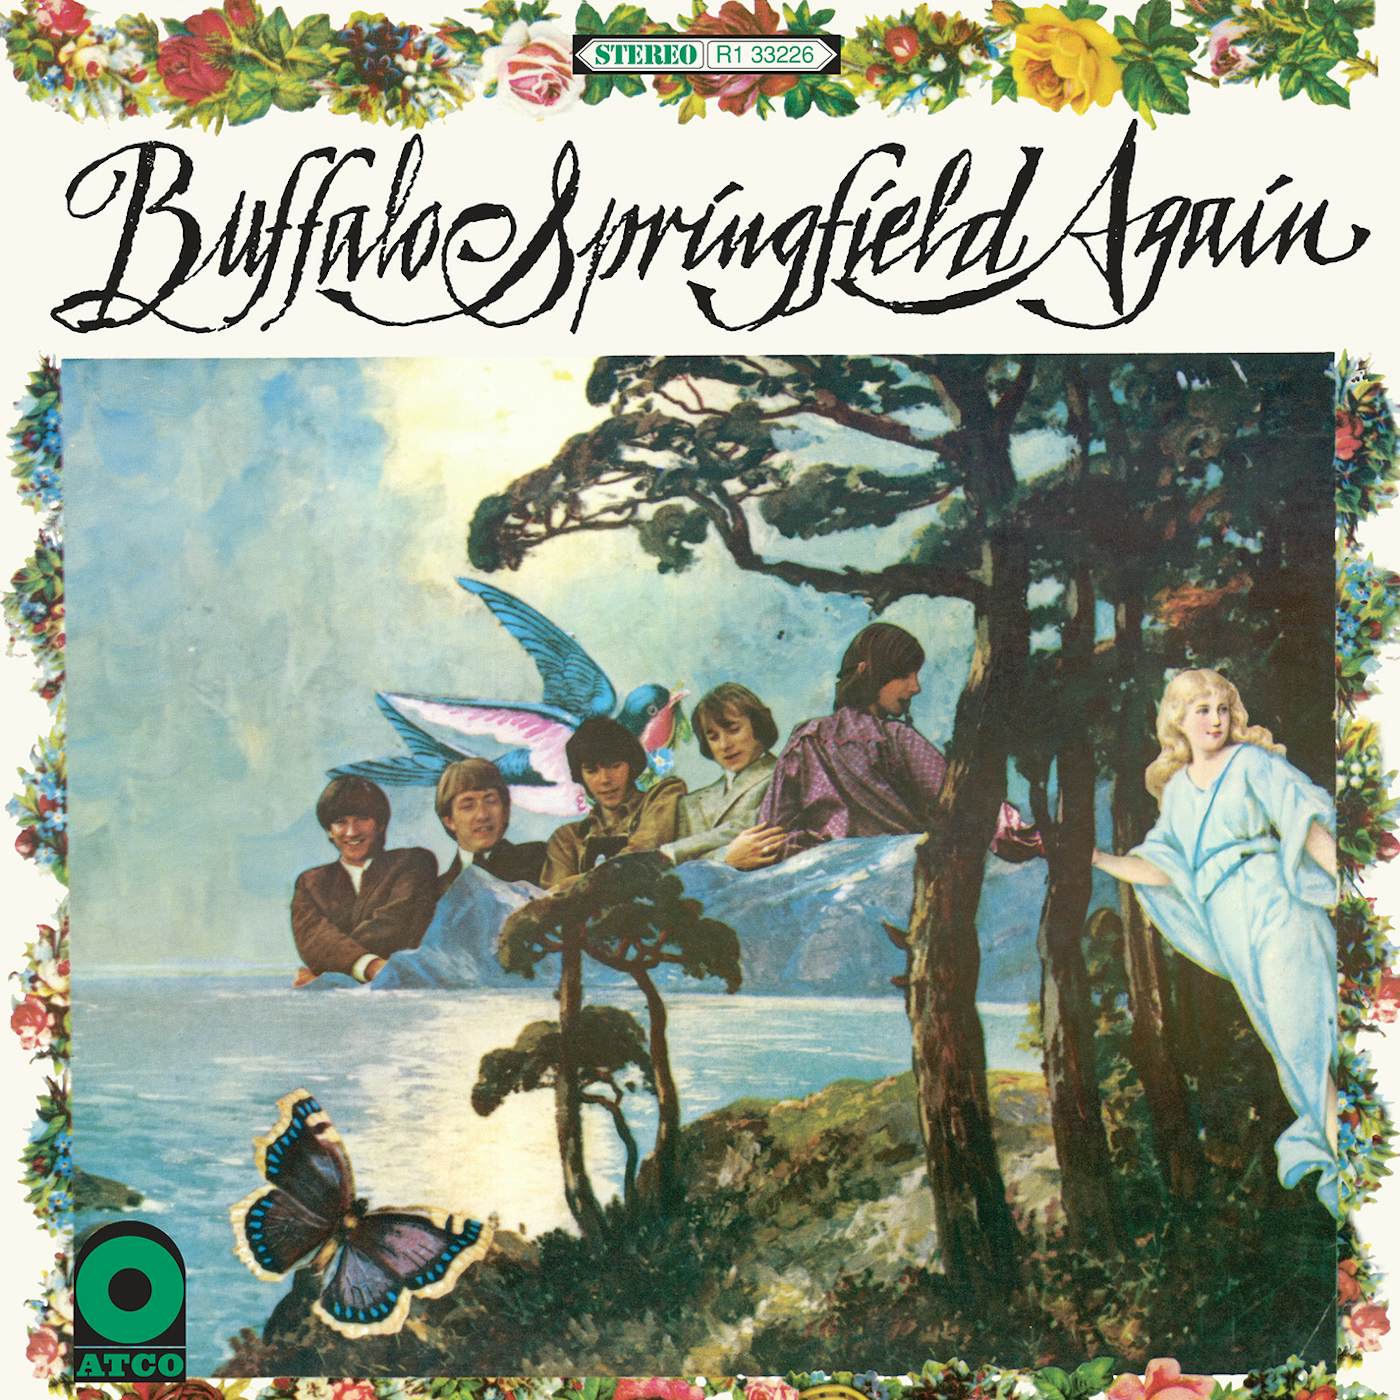 Buffalo Springfield Again Vinyl Record